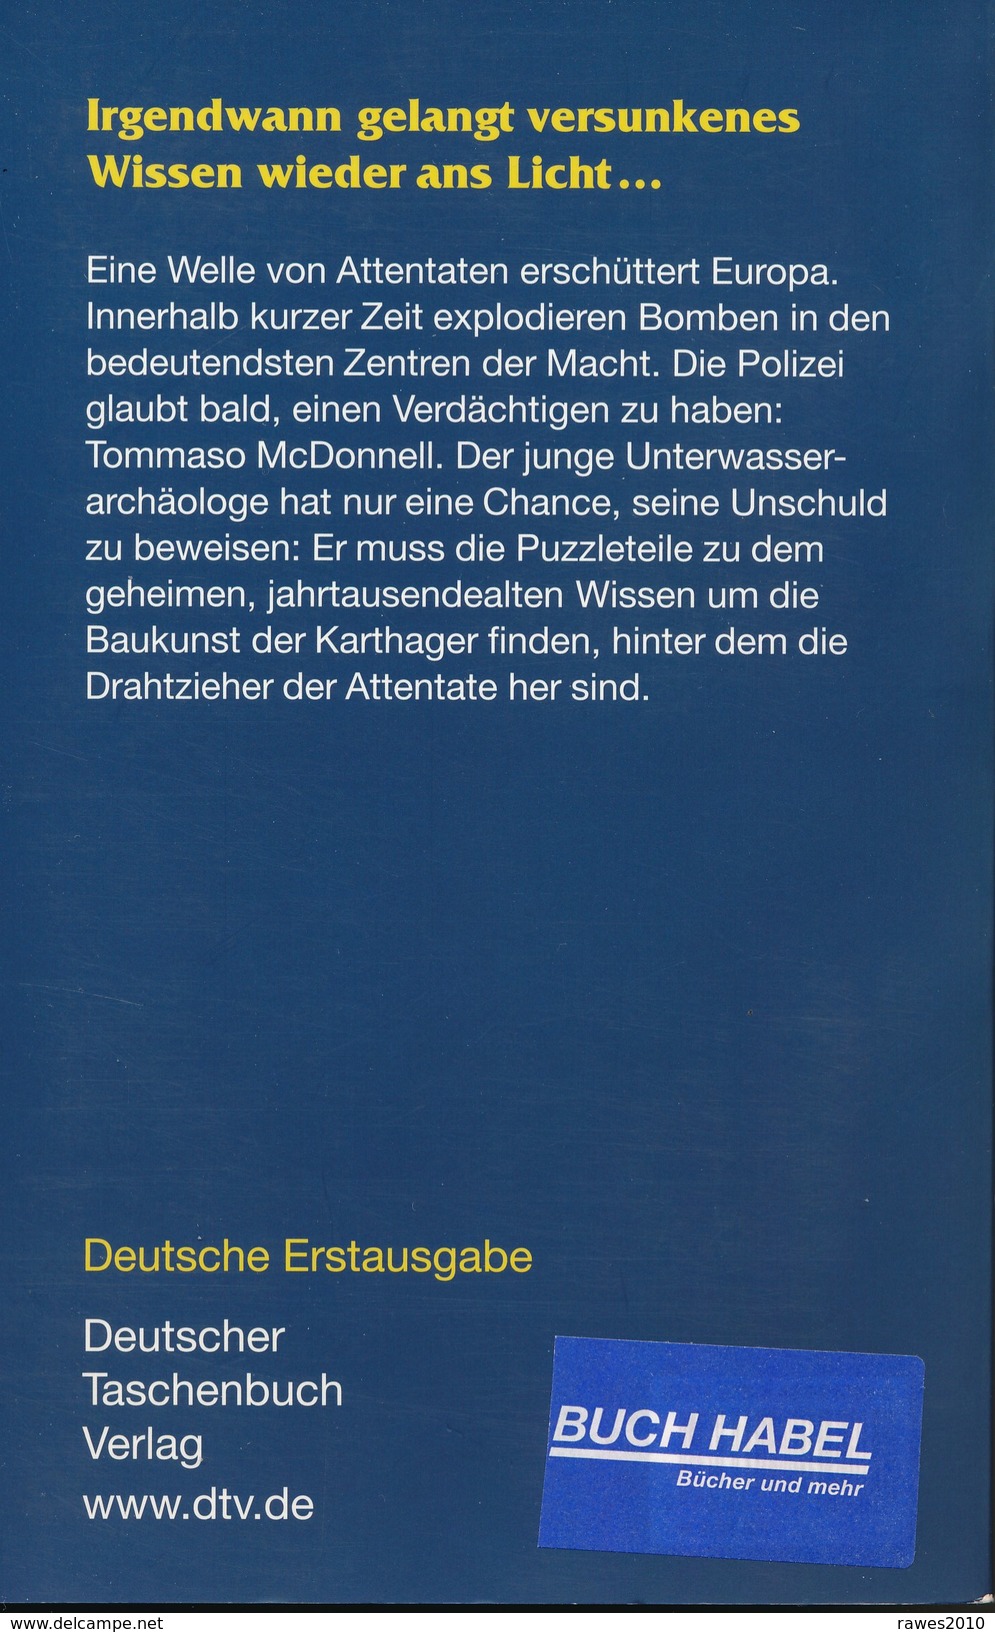 Taschenbuch: Denis Lepee: Der Carthago Code Thriller Deutscher Taschenbuch Verlag 2008 - Policíacos